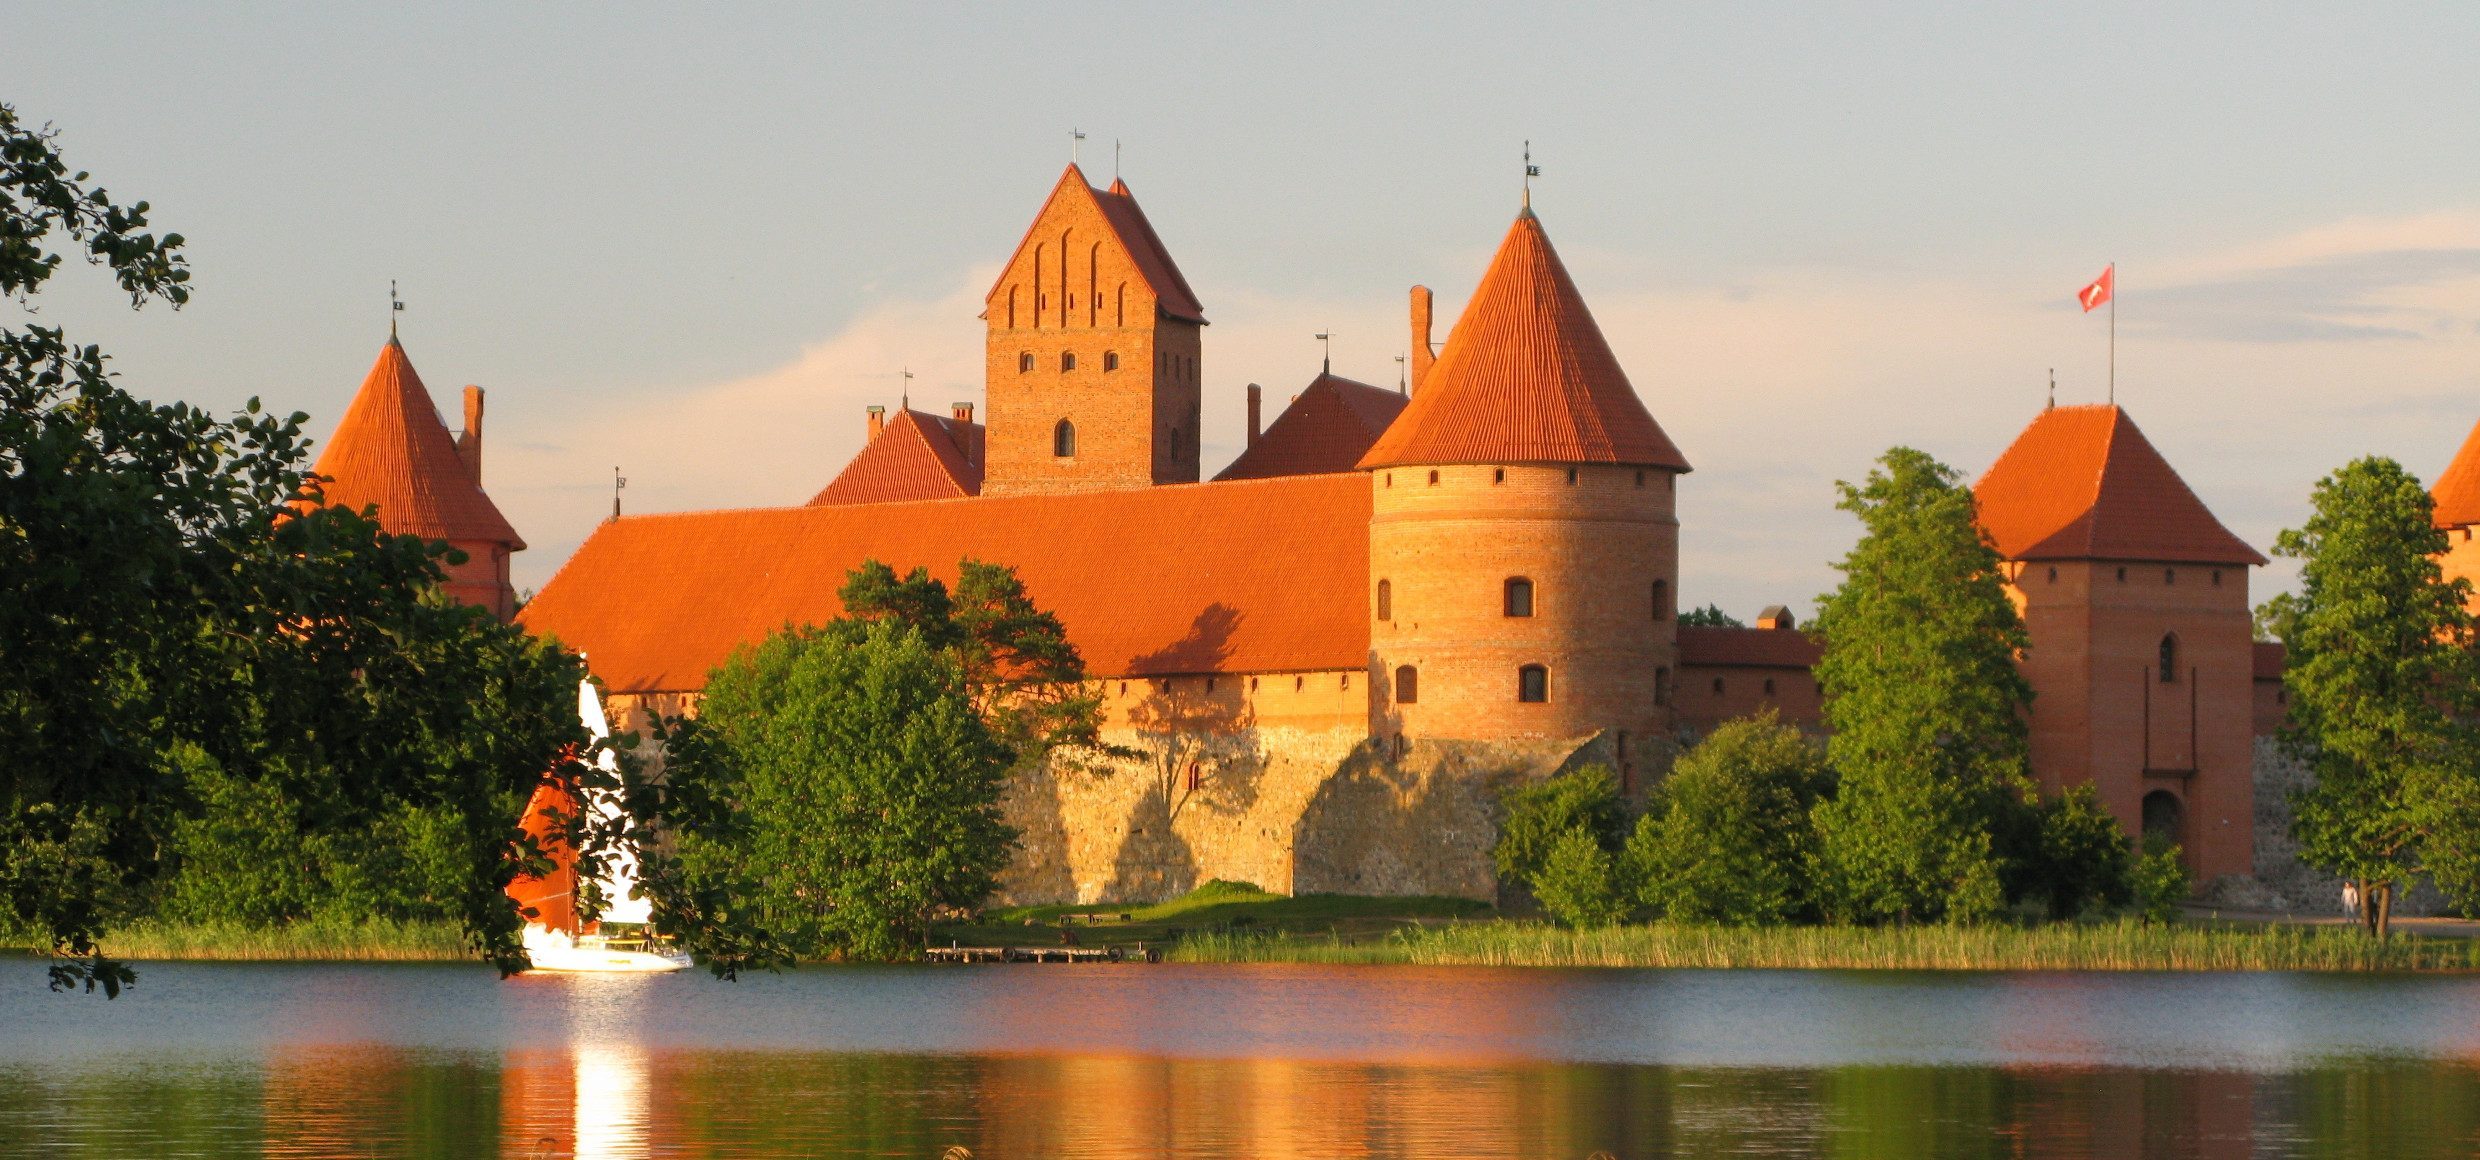 Litauen-Trakai-Castle-Kulturreise